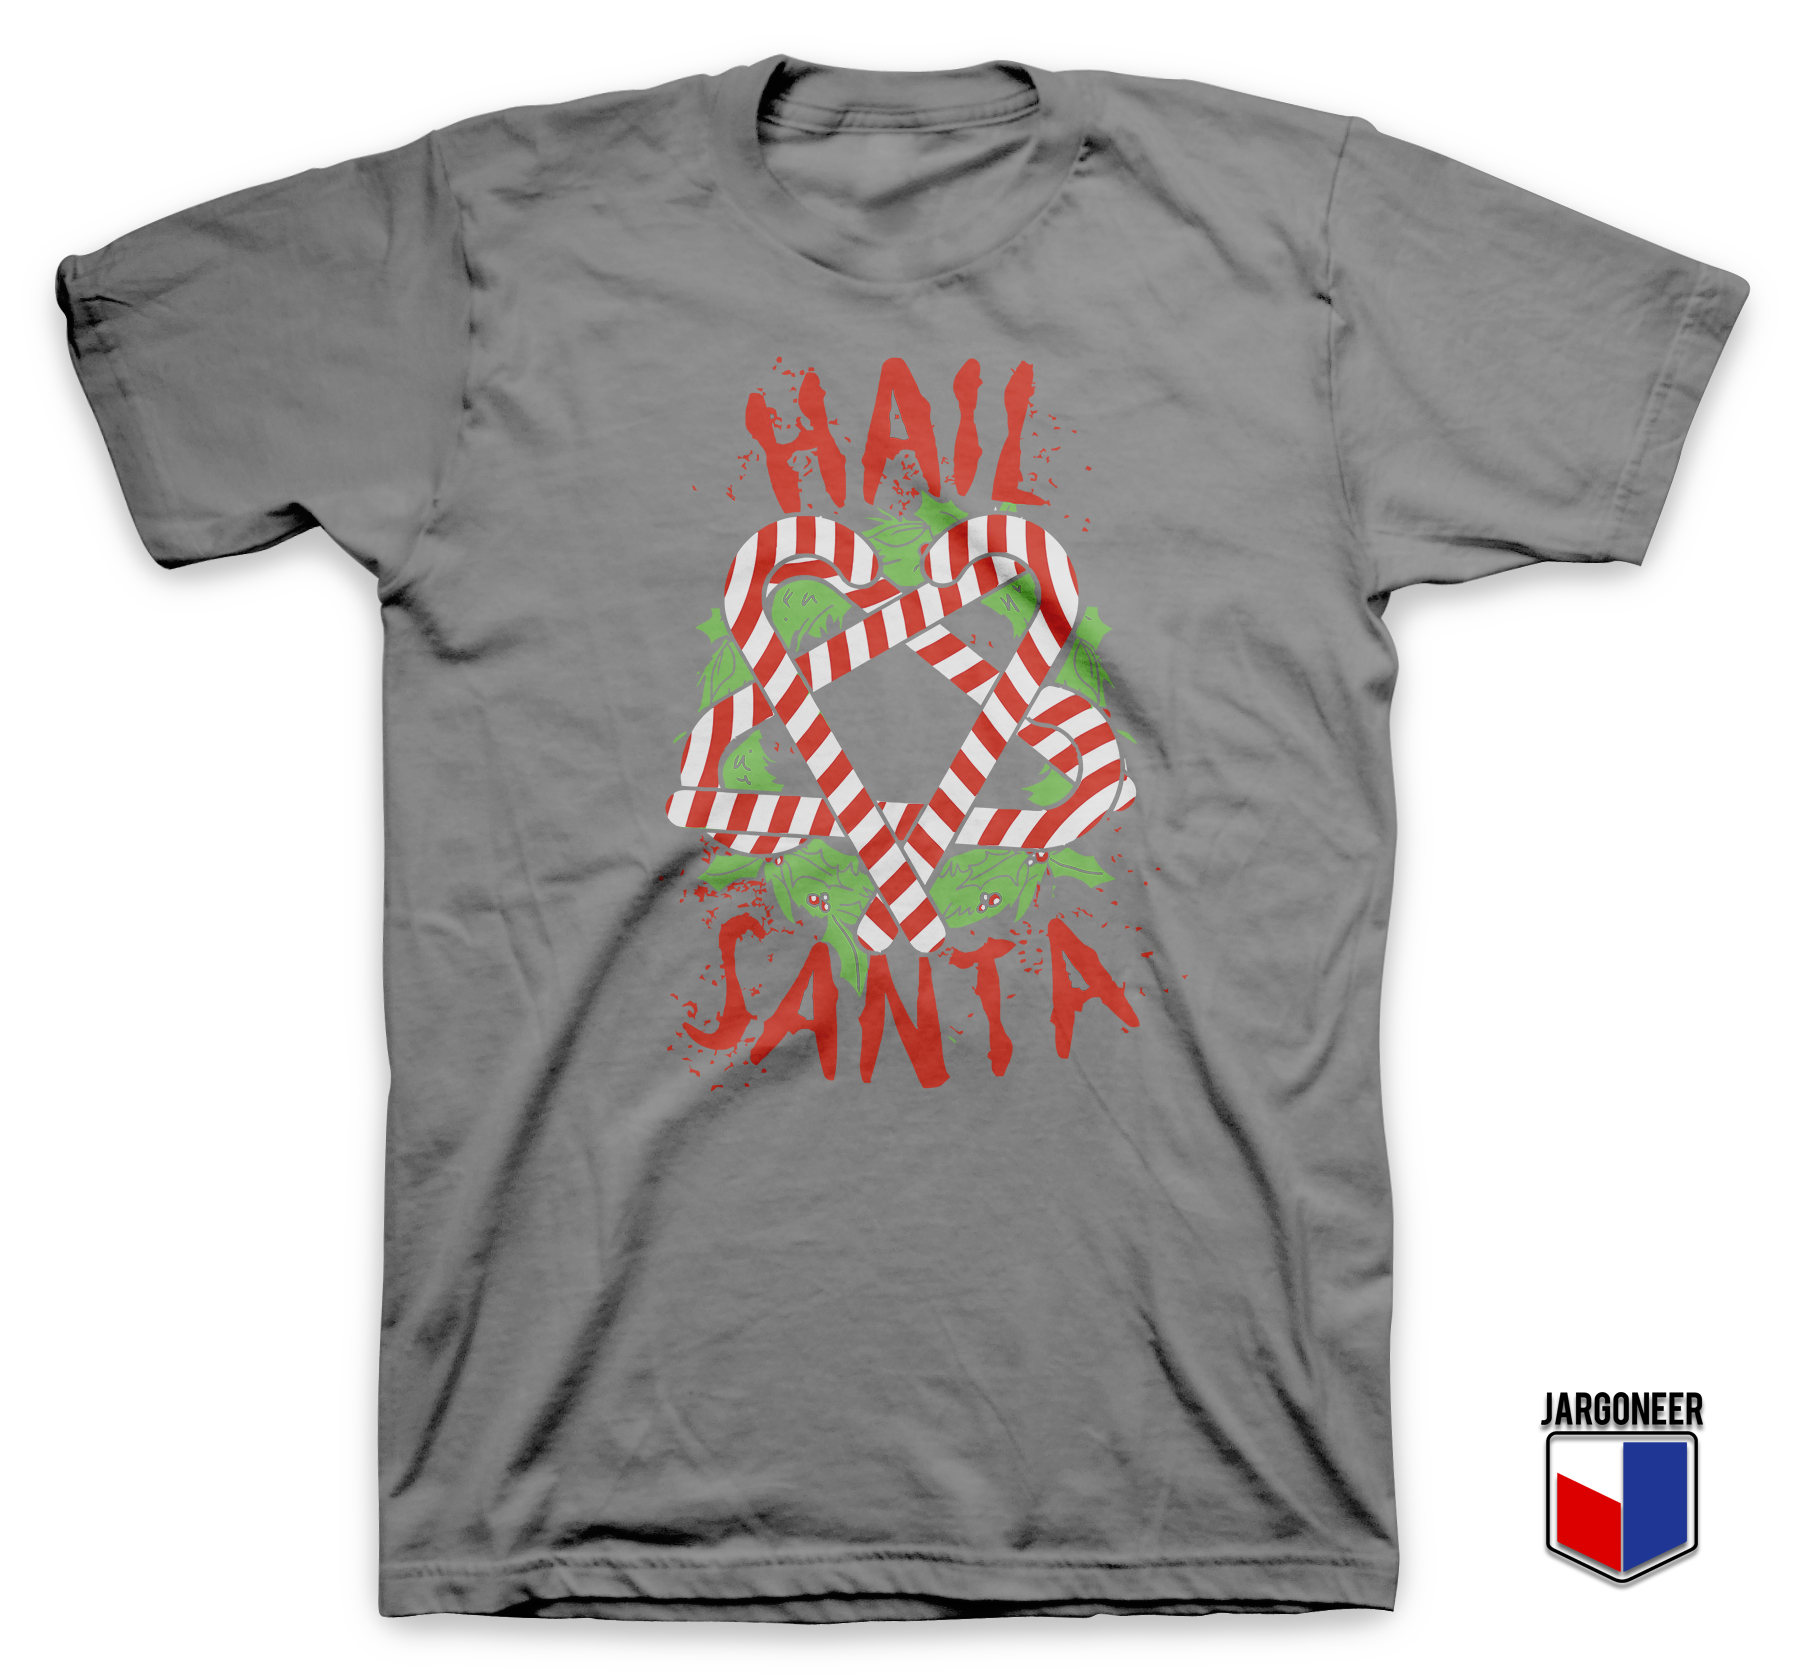 Hail Hail Santa Gray T Shirt - Shop Unique Graphic Cool Shirt Designs